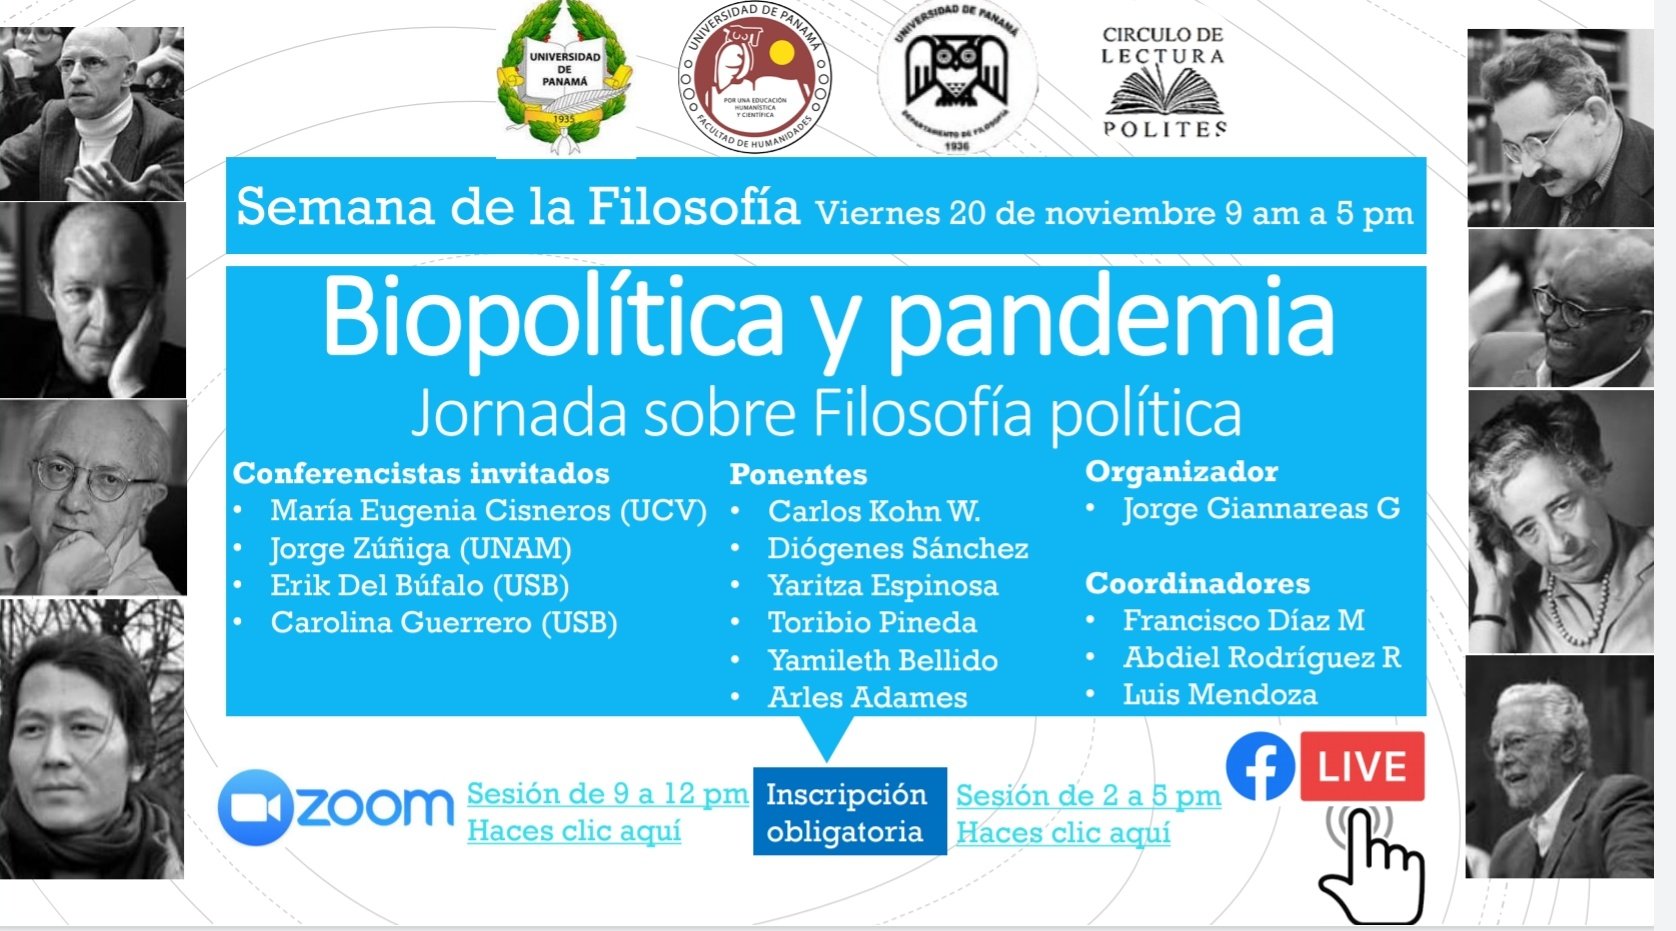 Programa de la Jornada de Filosofía Política Biopolítica y pandemia